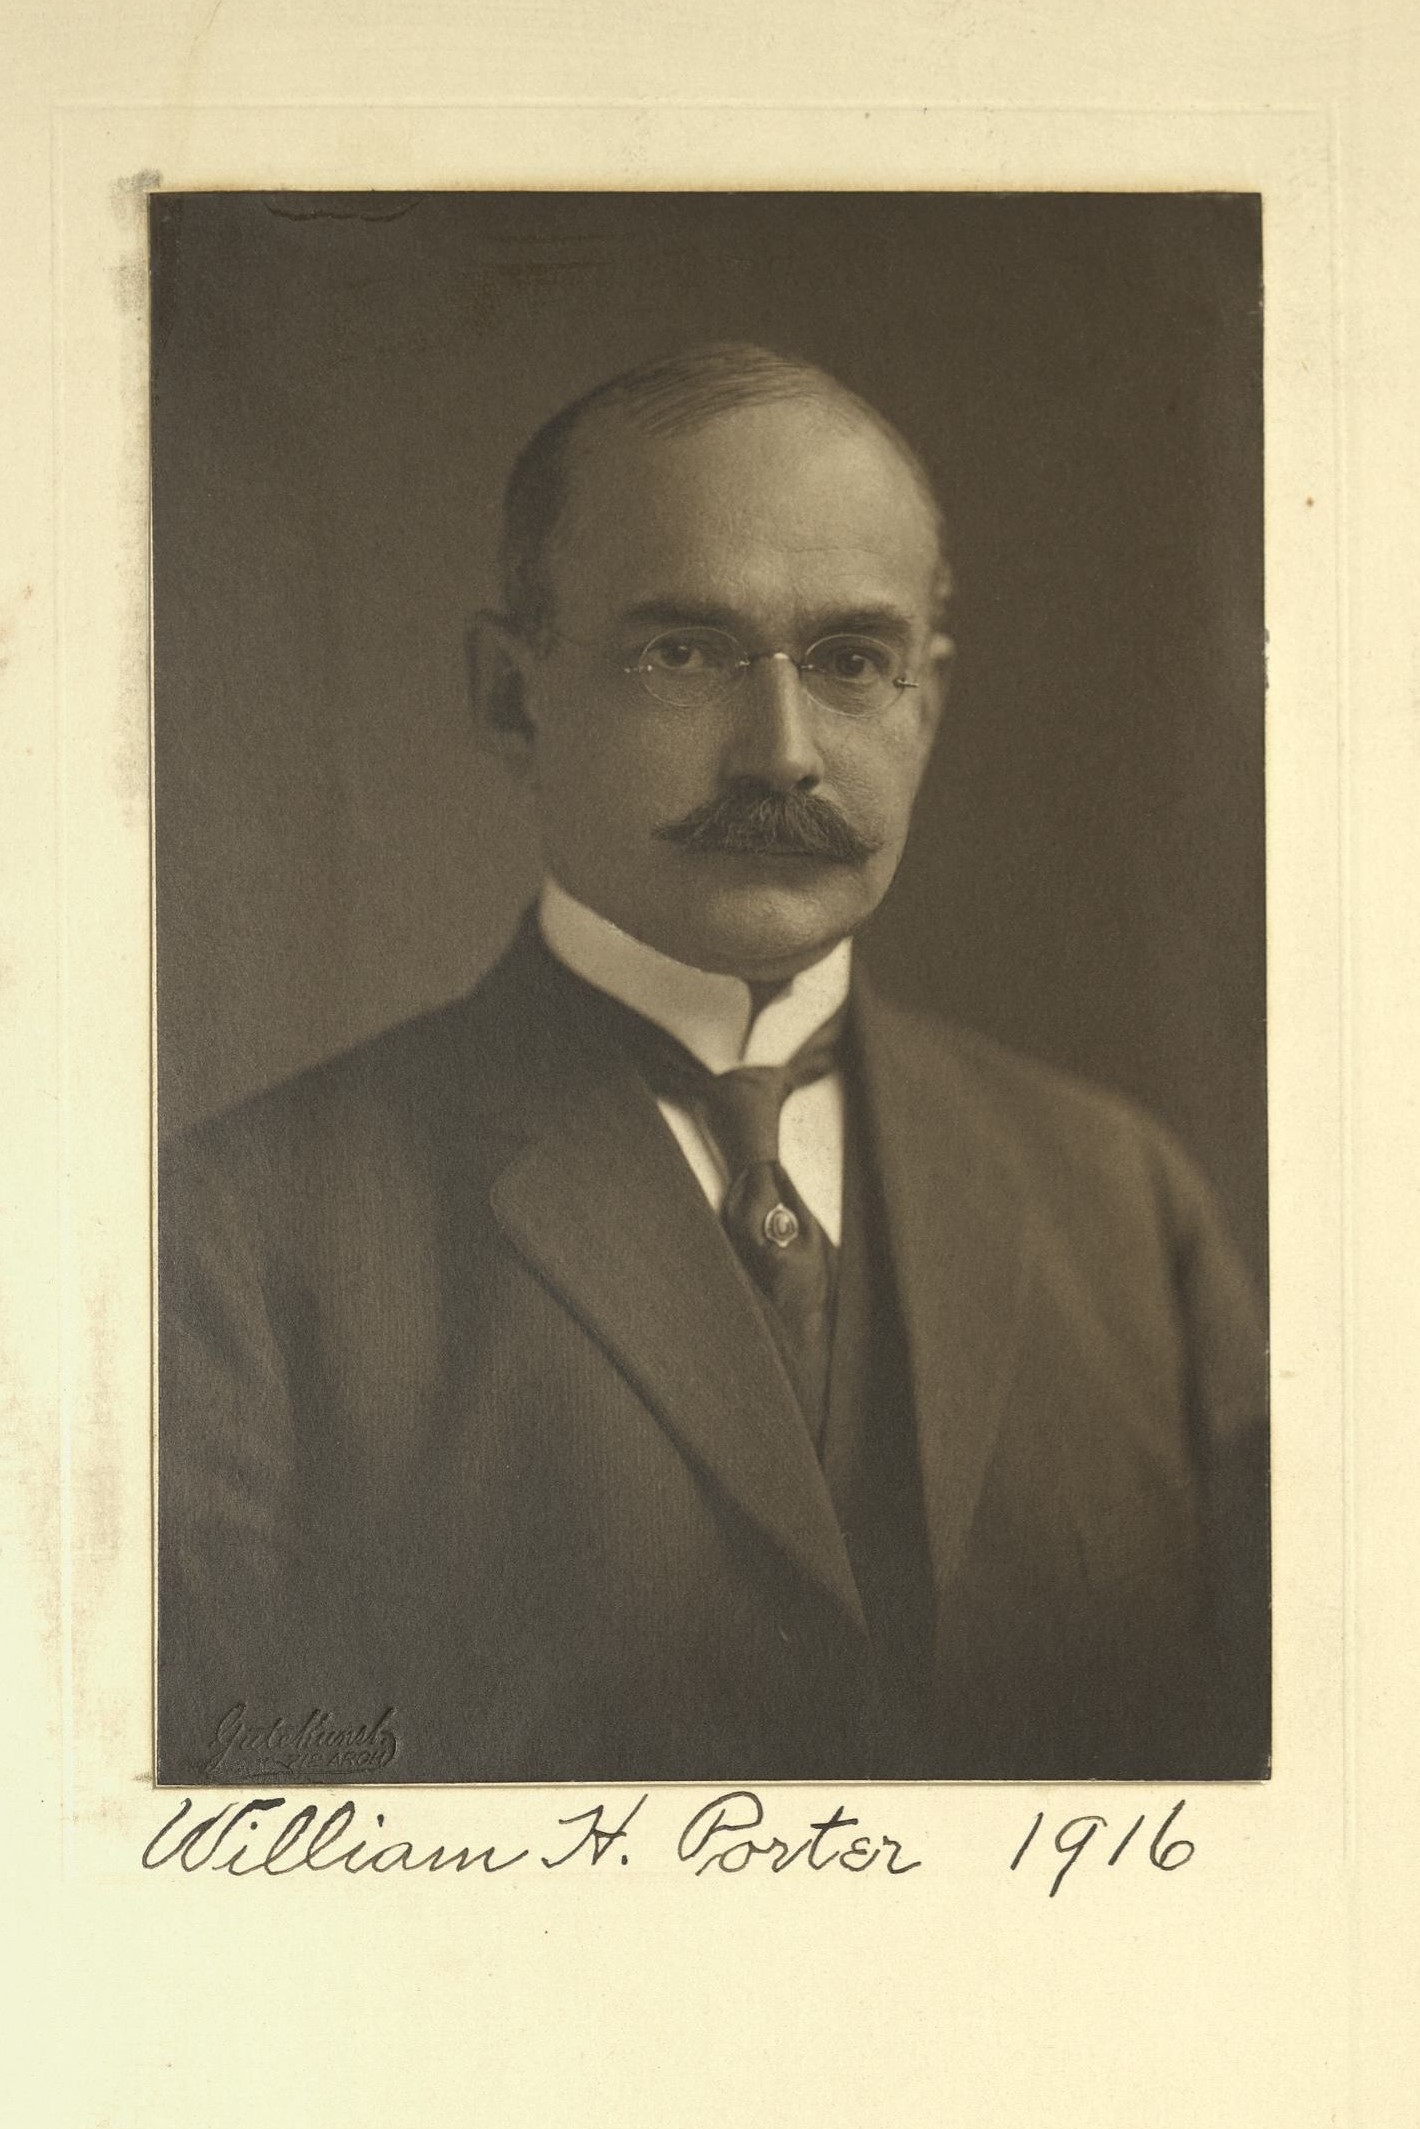 Member portrait of William H. Porter